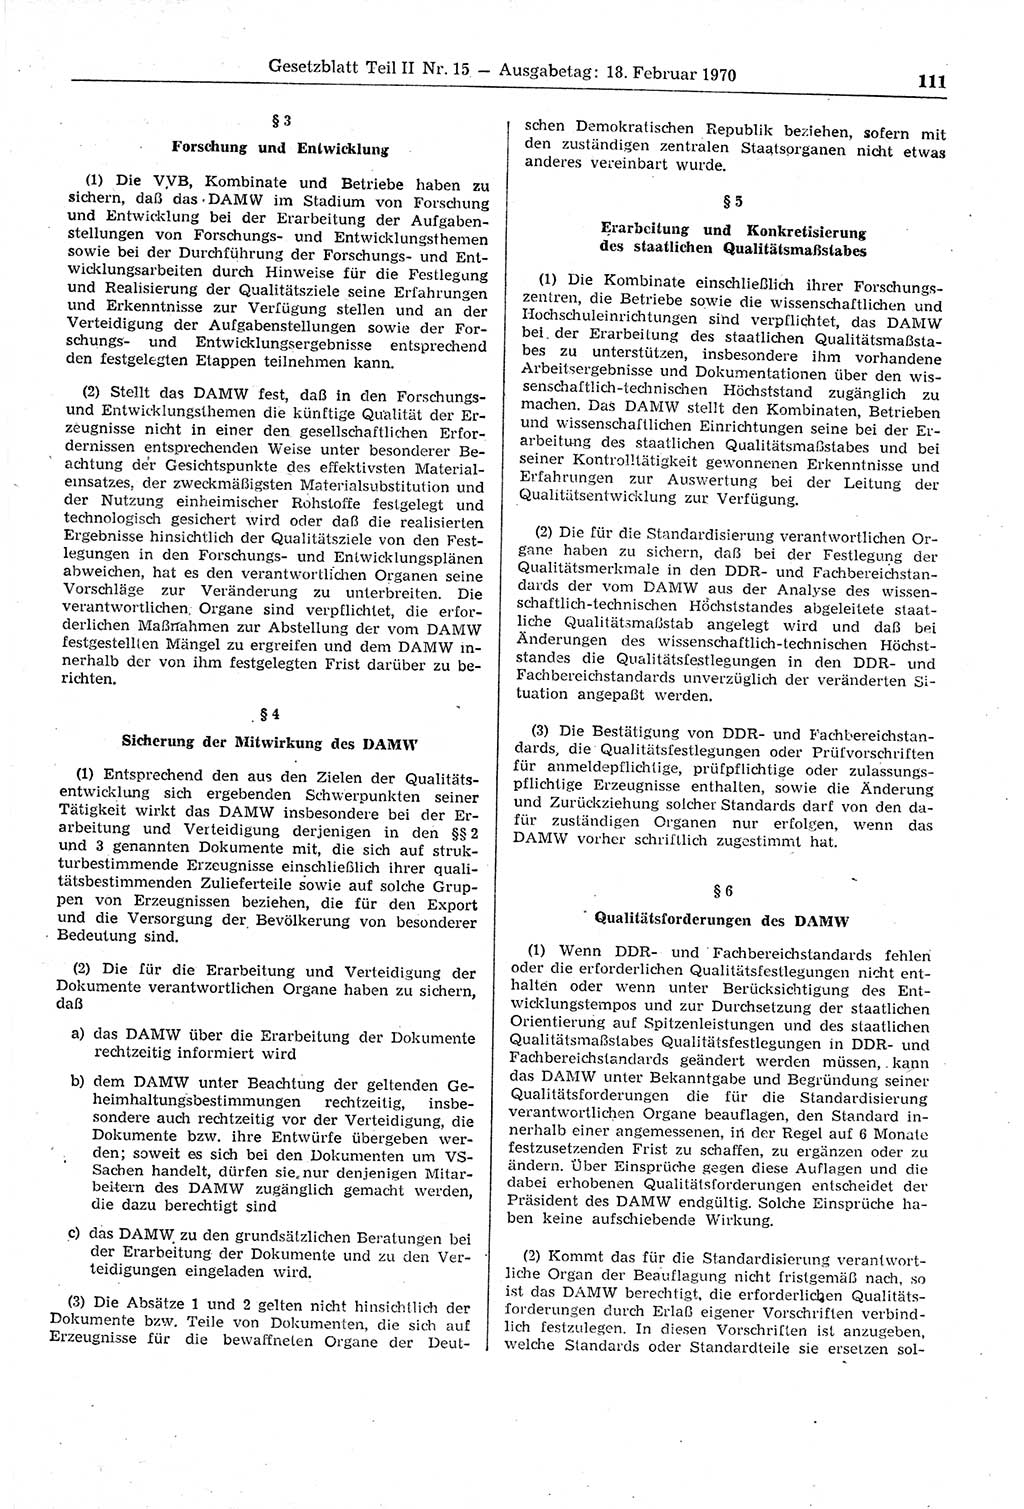 Gesetzblatt (GBl.) der Deutschen Demokratischen Republik (DDR) Teil ⅠⅠ 1970, Seite 111 (GBl. DDR ⅠⅠ 1970, S. 111)